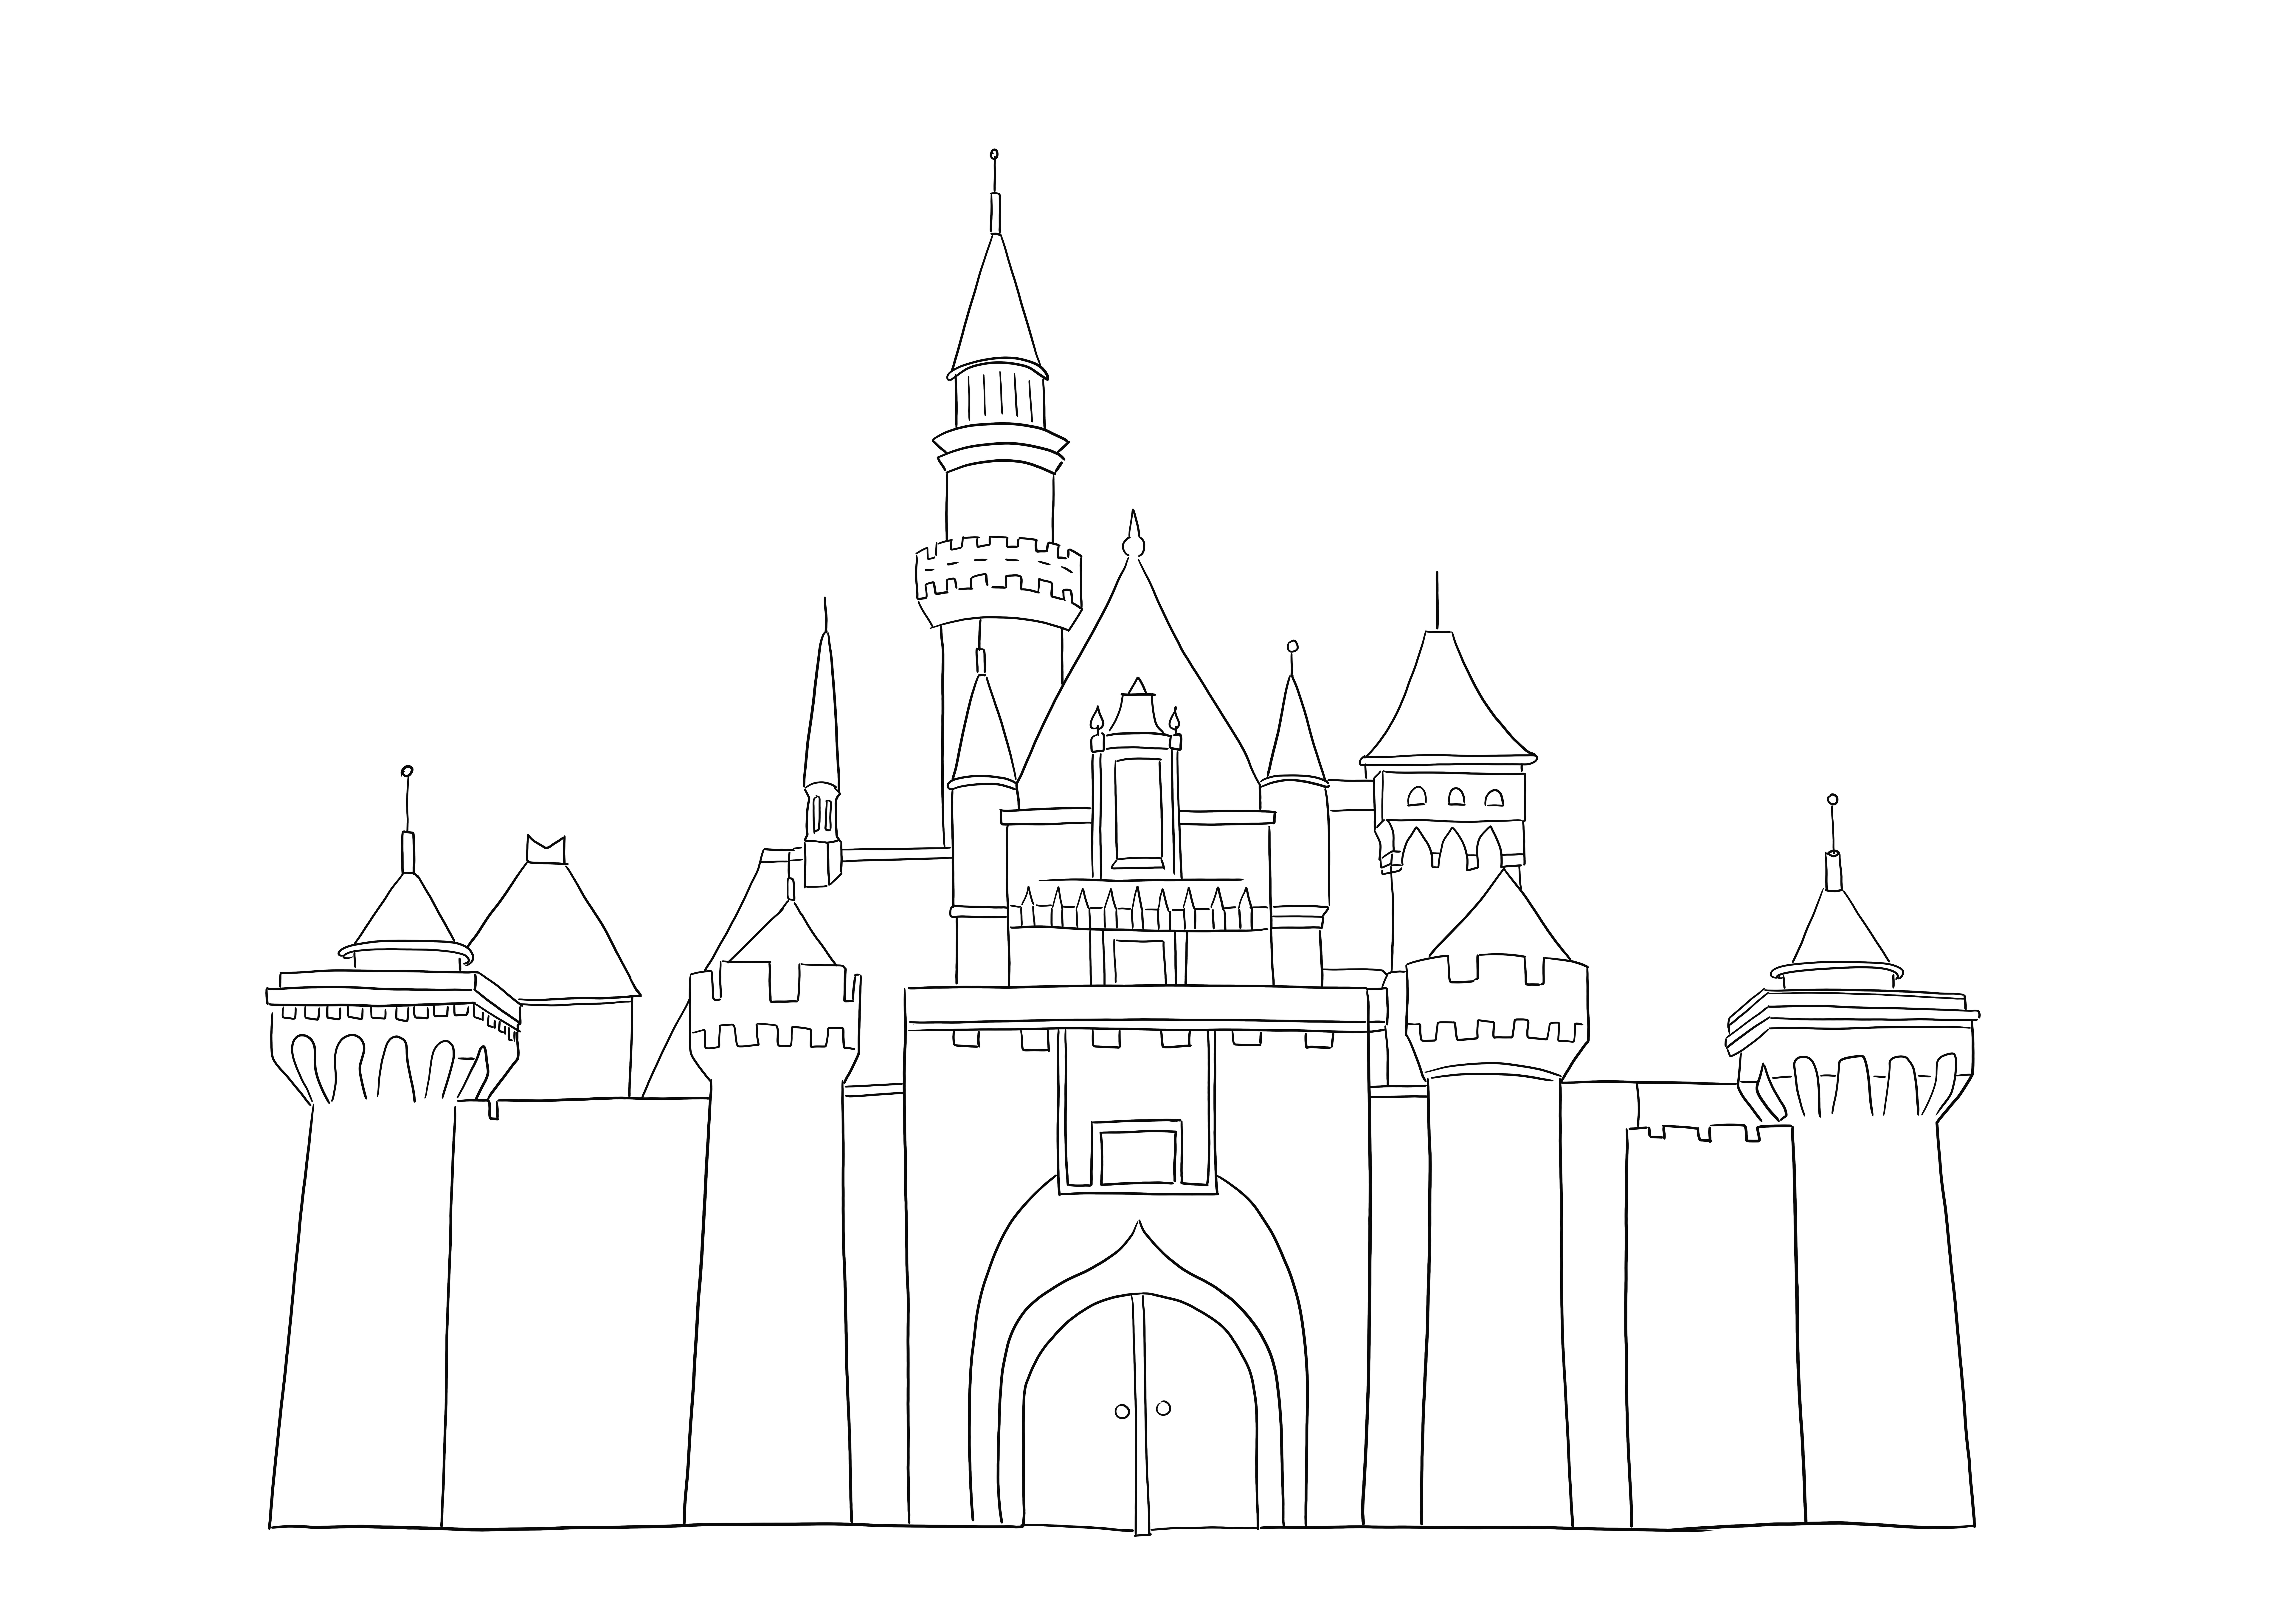 Disney Castle wird von allen Kindern bevorzugt ausgemalt, da es völlig kostenlos zu drucken ist